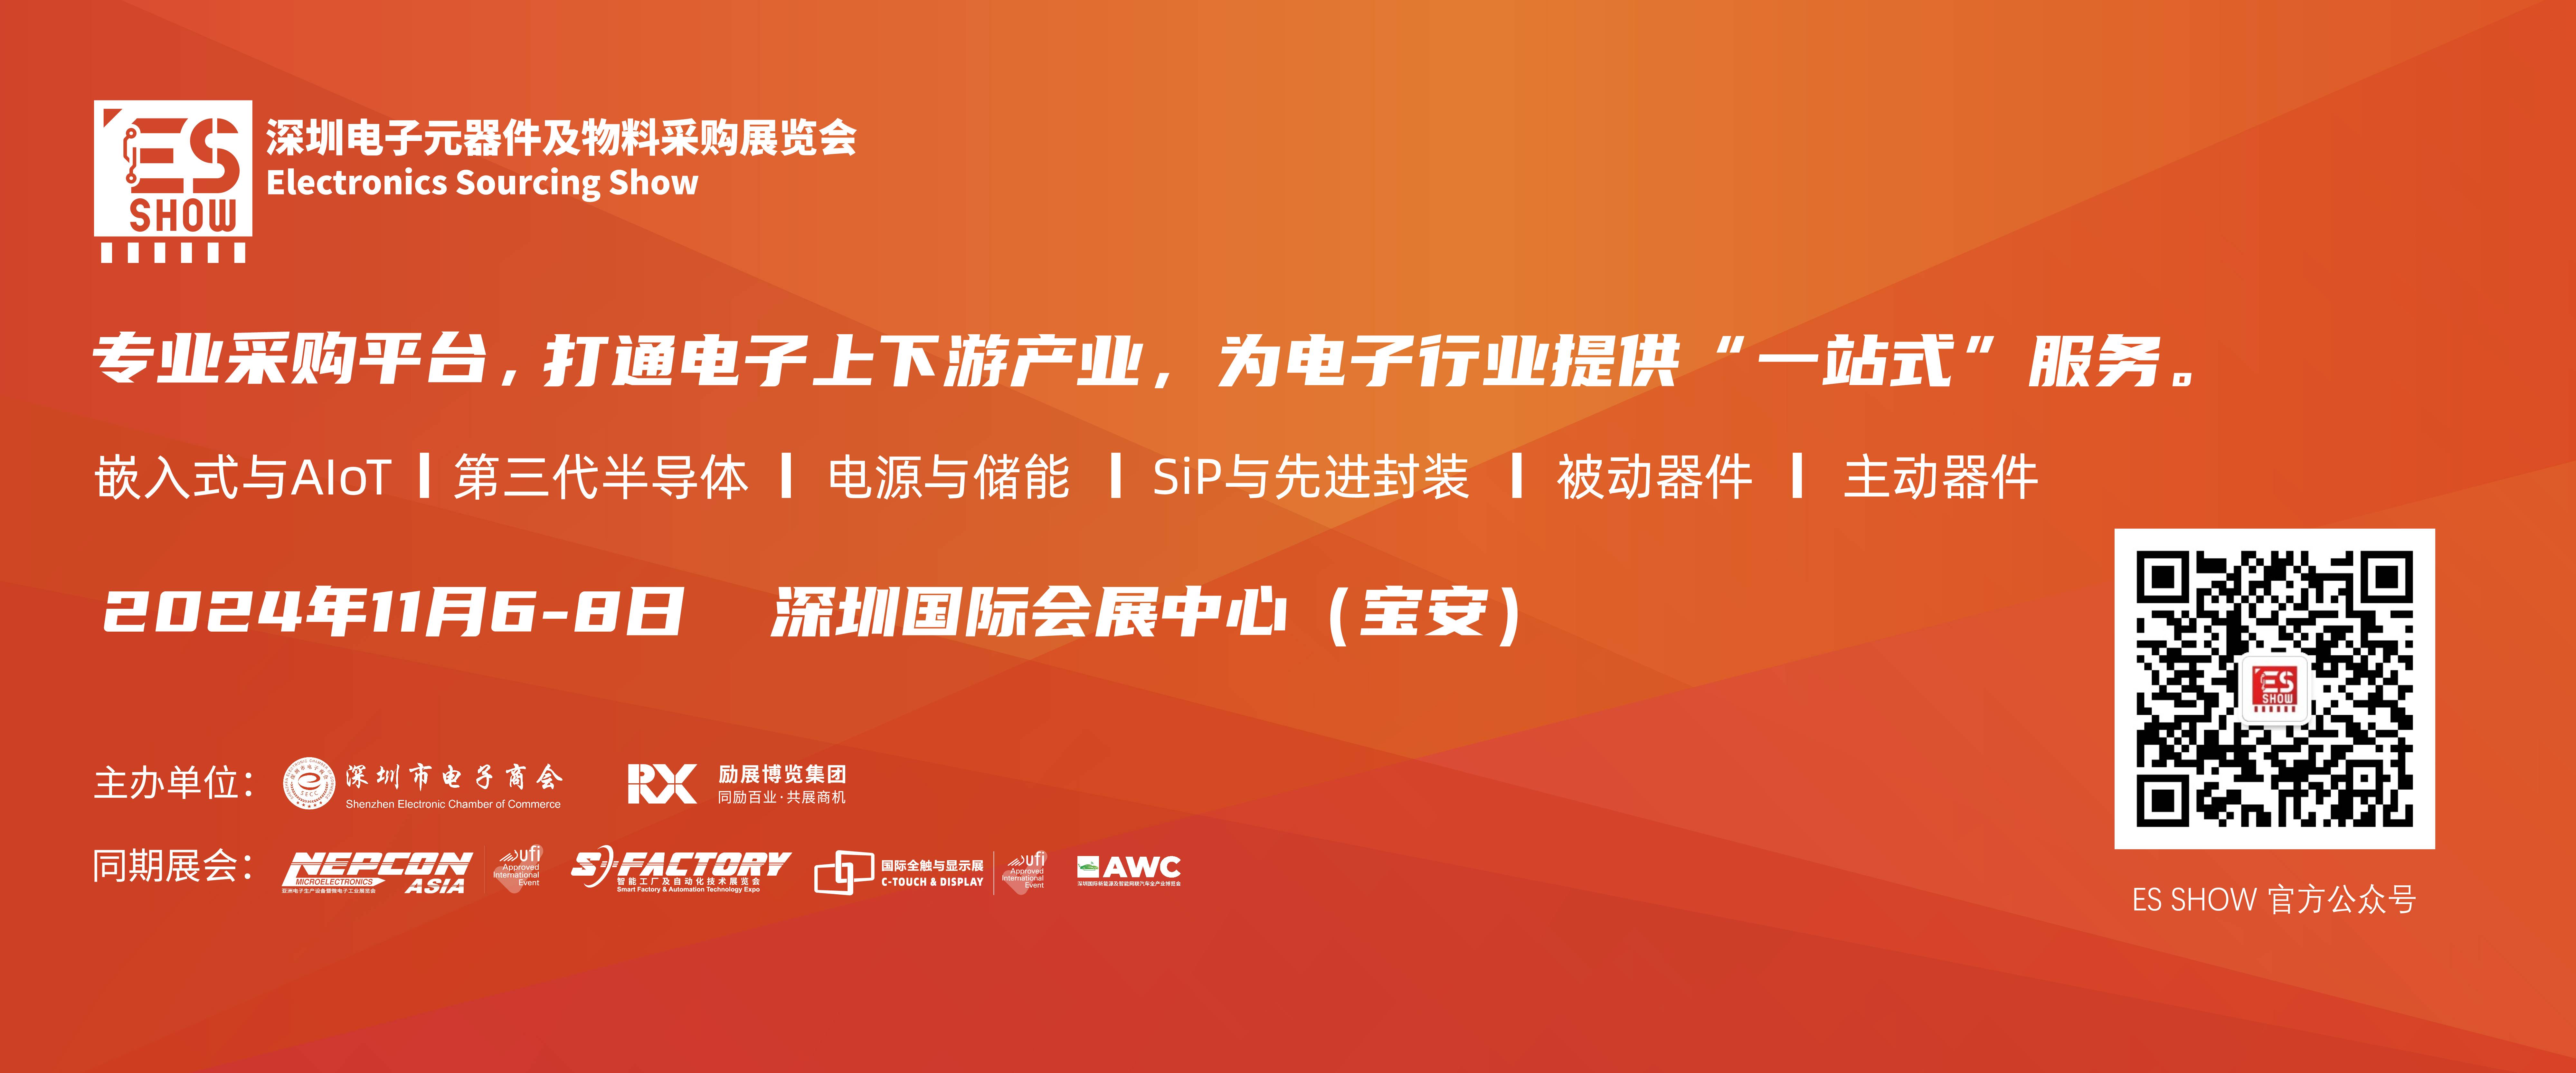 深圳电子展 华南电子展 eVTOL 传感器 新能源 电子展